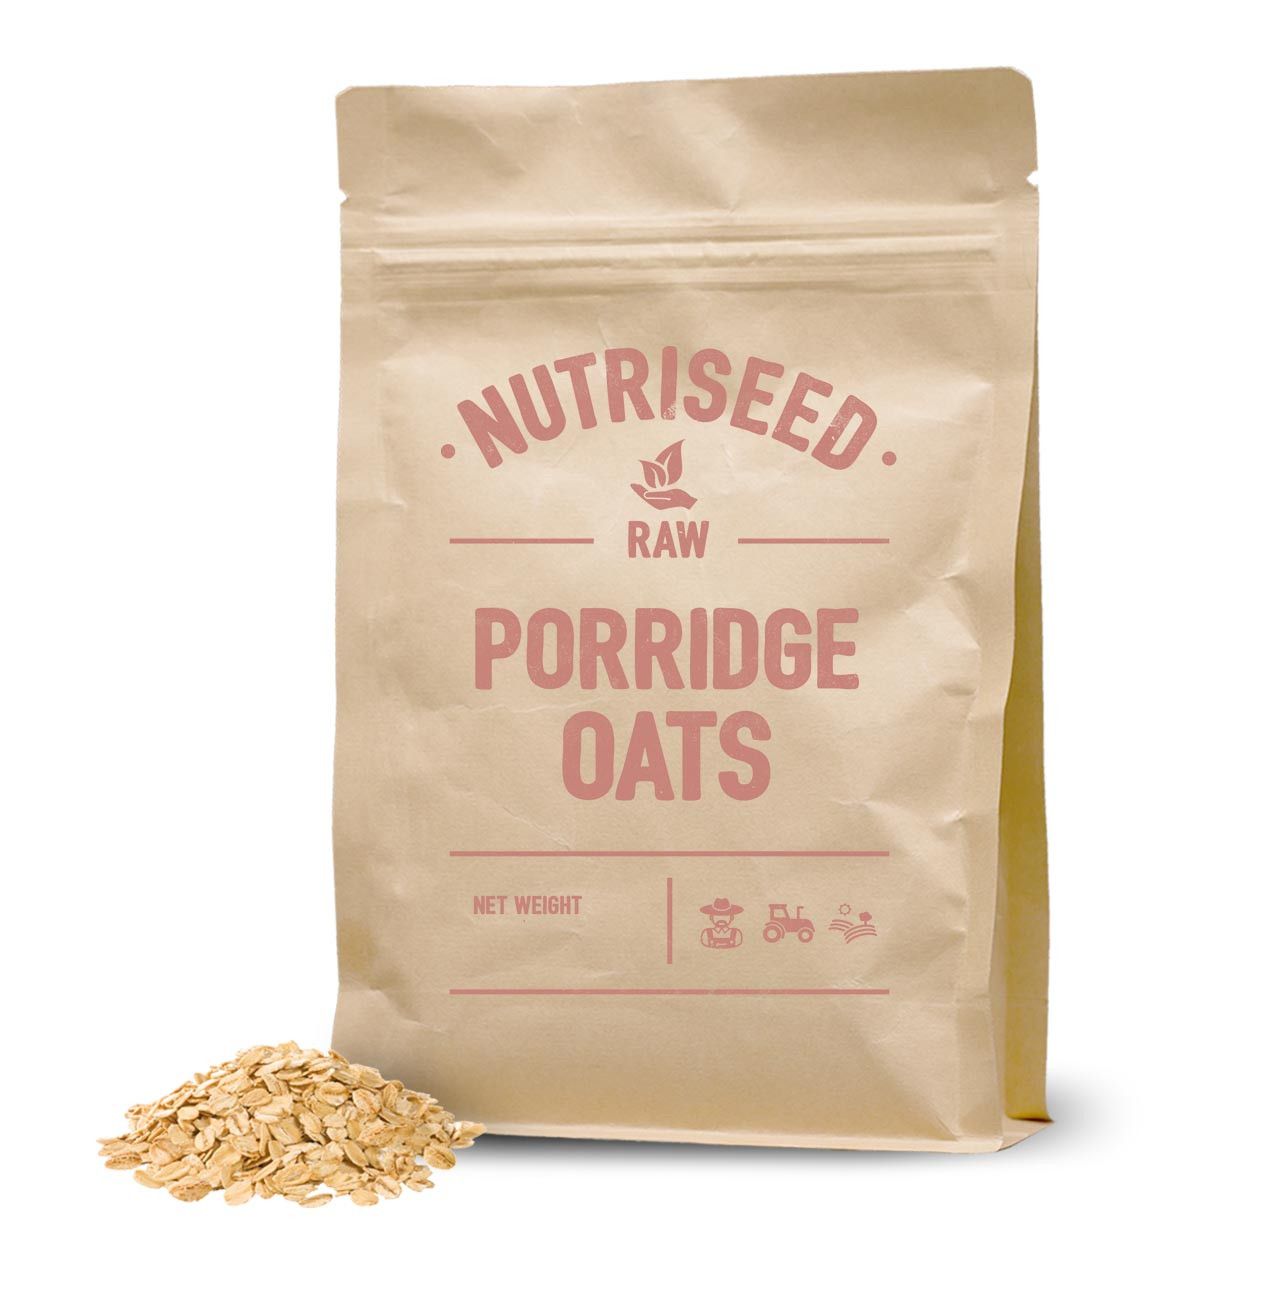 An image of Porridge Oats - 500g Whole Grain Porridge Oats, Best Porridge Oats, Rich in Fibr...